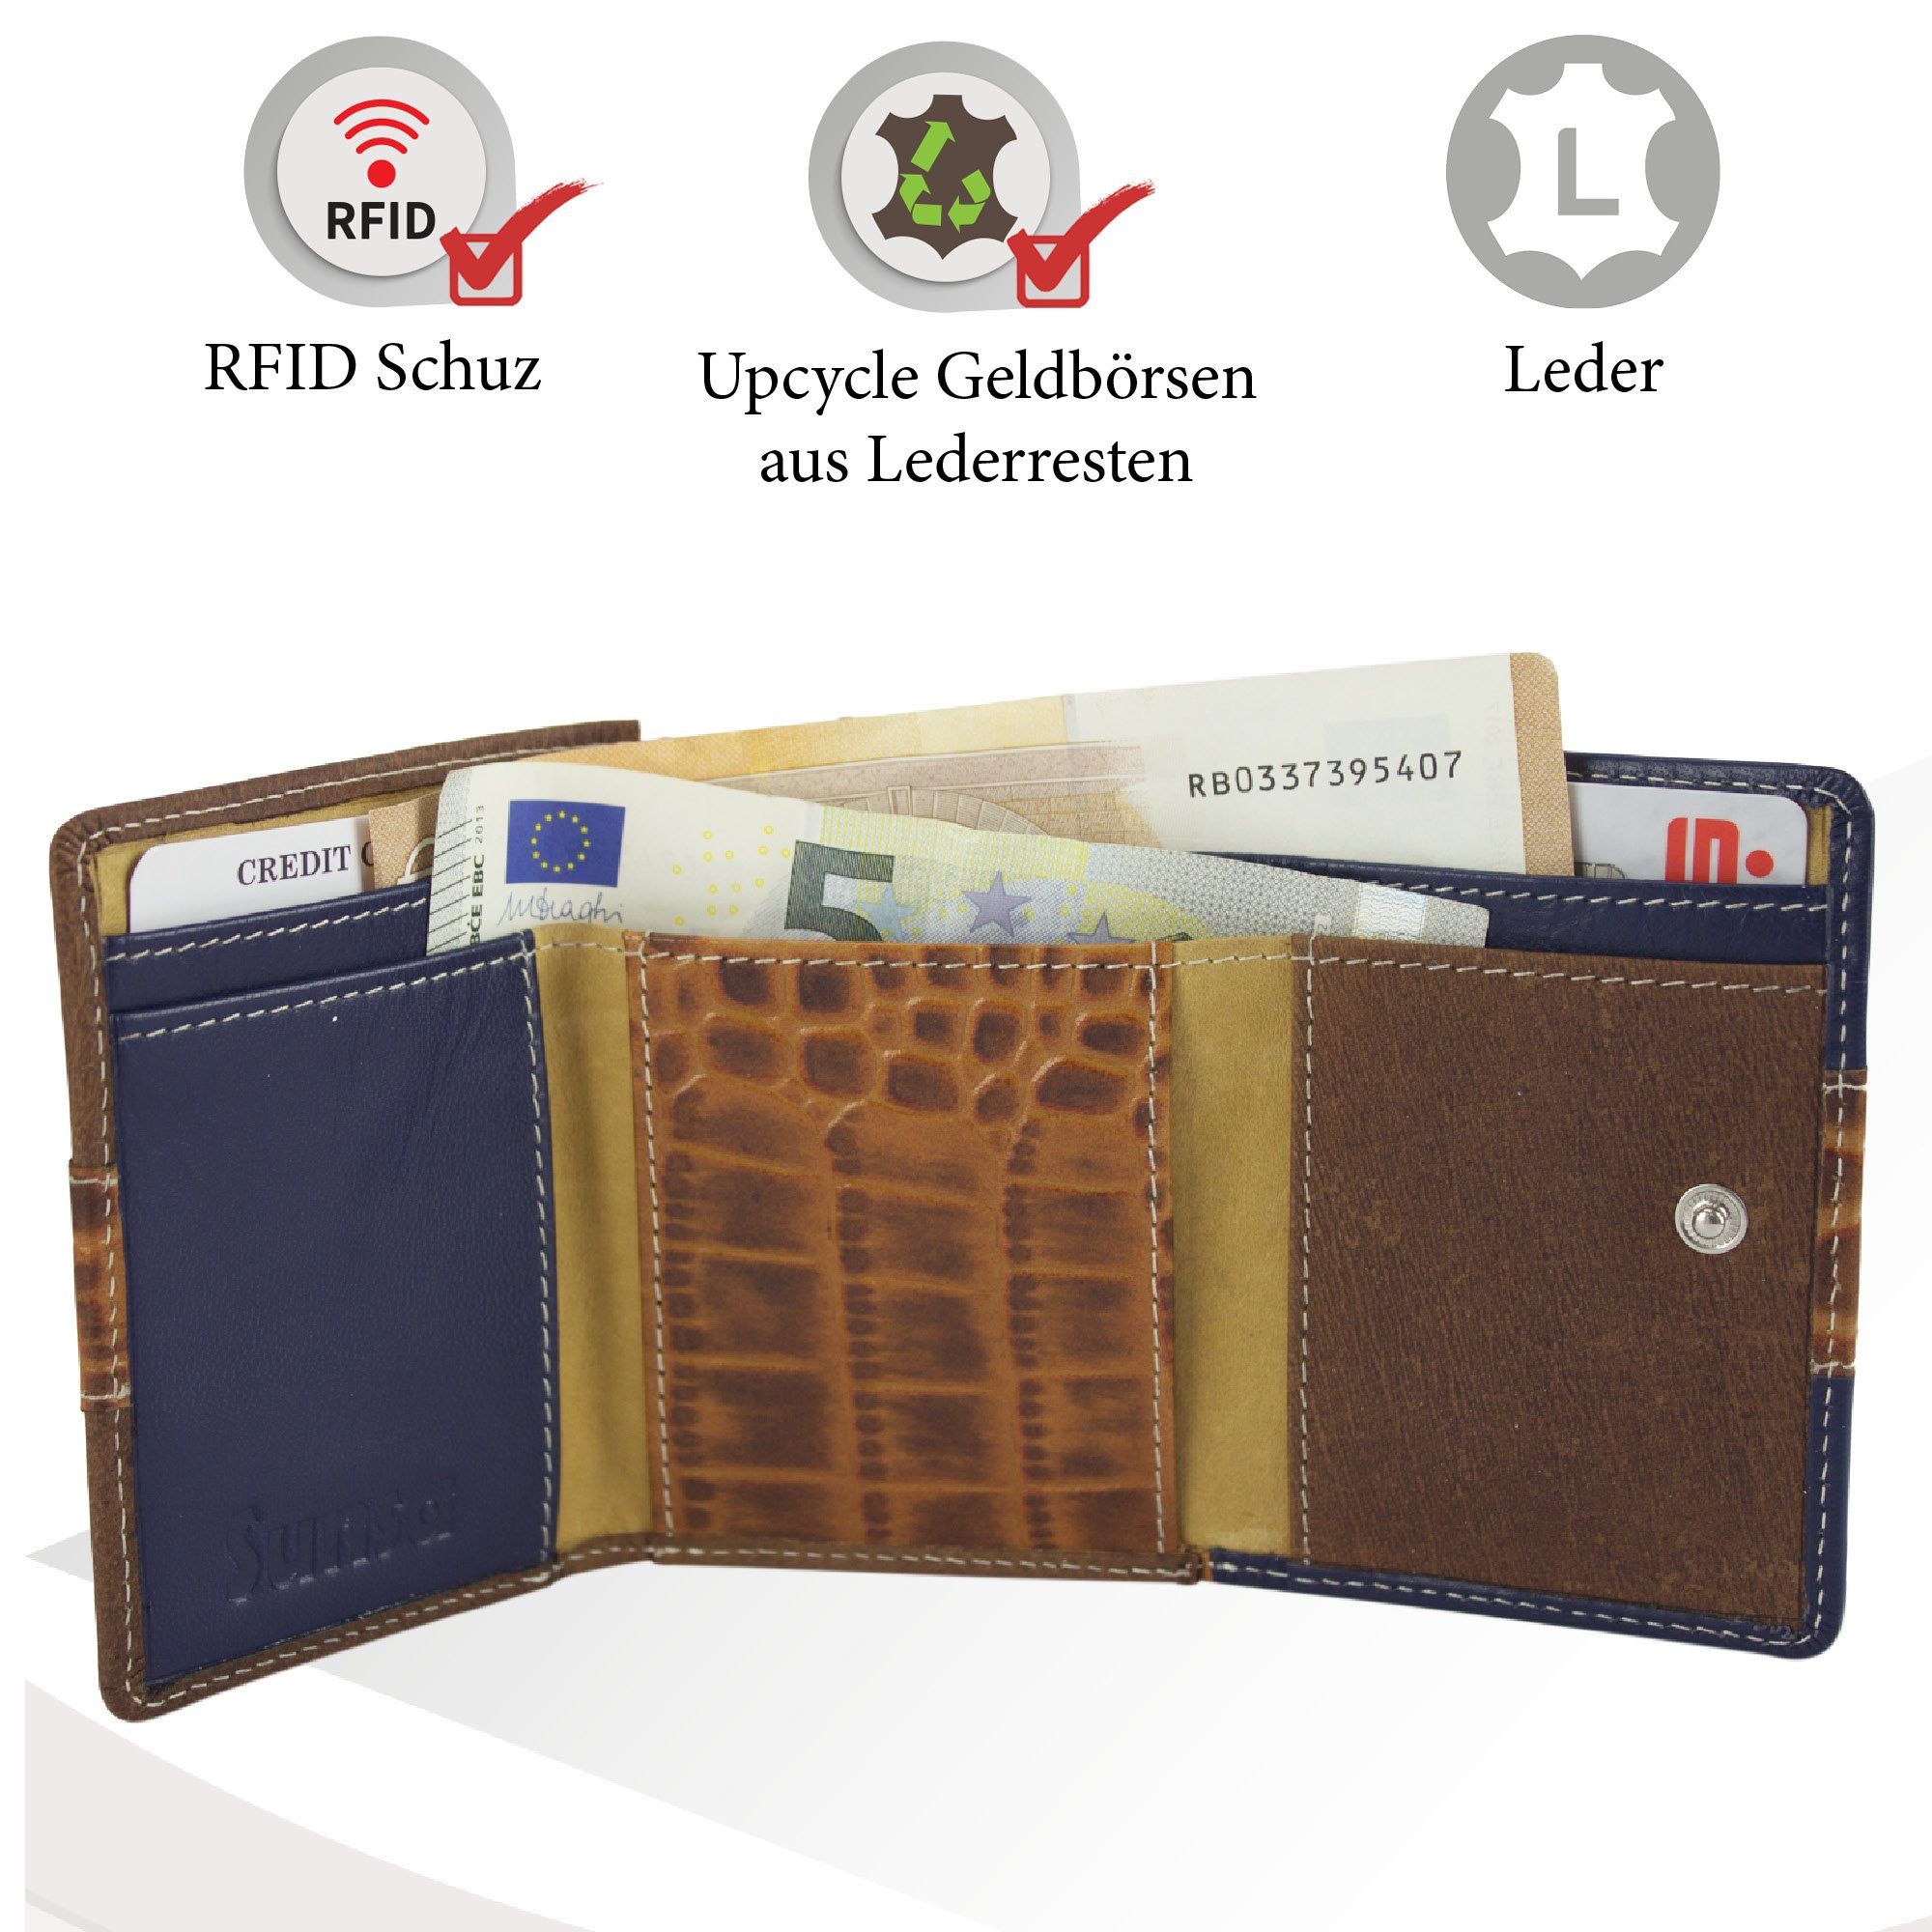 Sunsa Mini Geldbörse echt RFID-Schutz, Leder recycelten Damen echt Portemonnaie mit Leder, Brieftasche, aus Unisex Lederresten, schwarz/geldb/grün Geldbeutel kleine Geldbörse